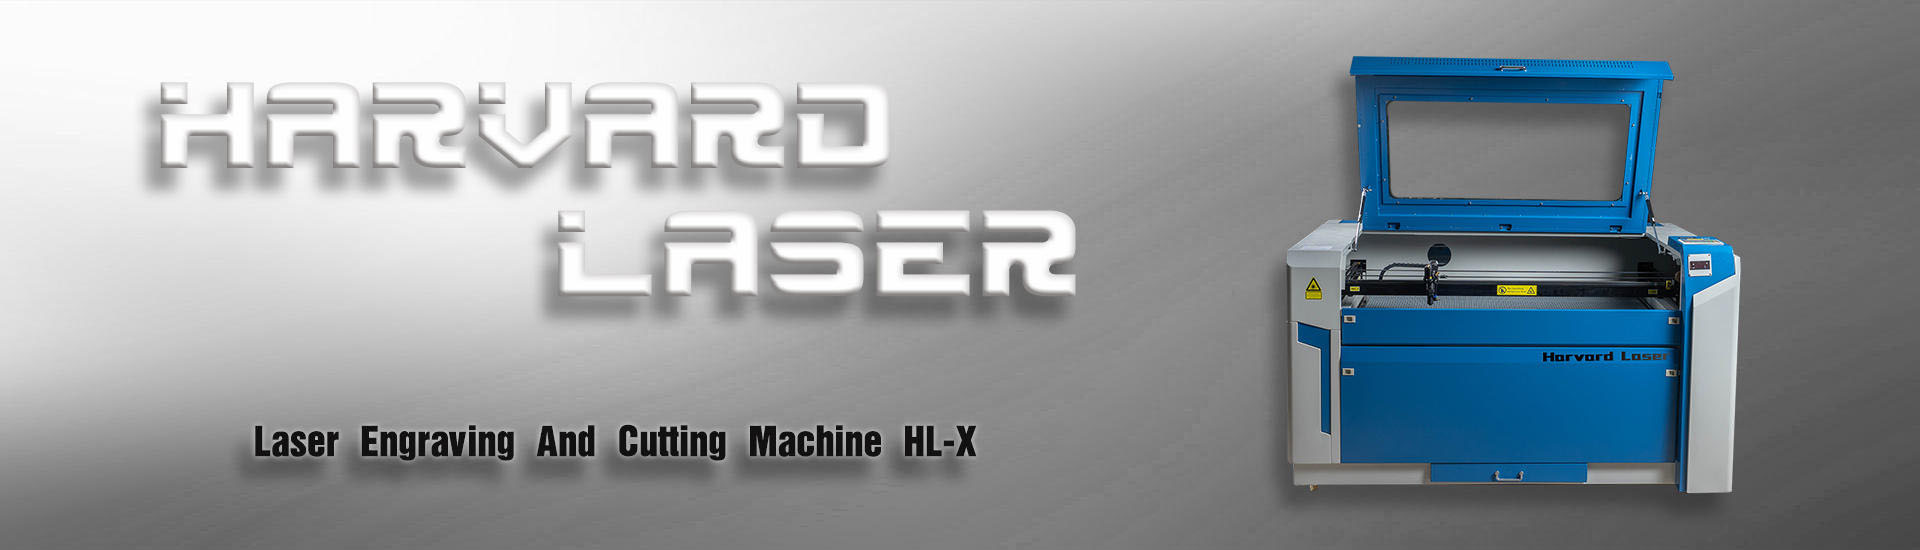 Fiber laser cutting machine|CO2 Laser engraving machine|Fiber laser marking machine